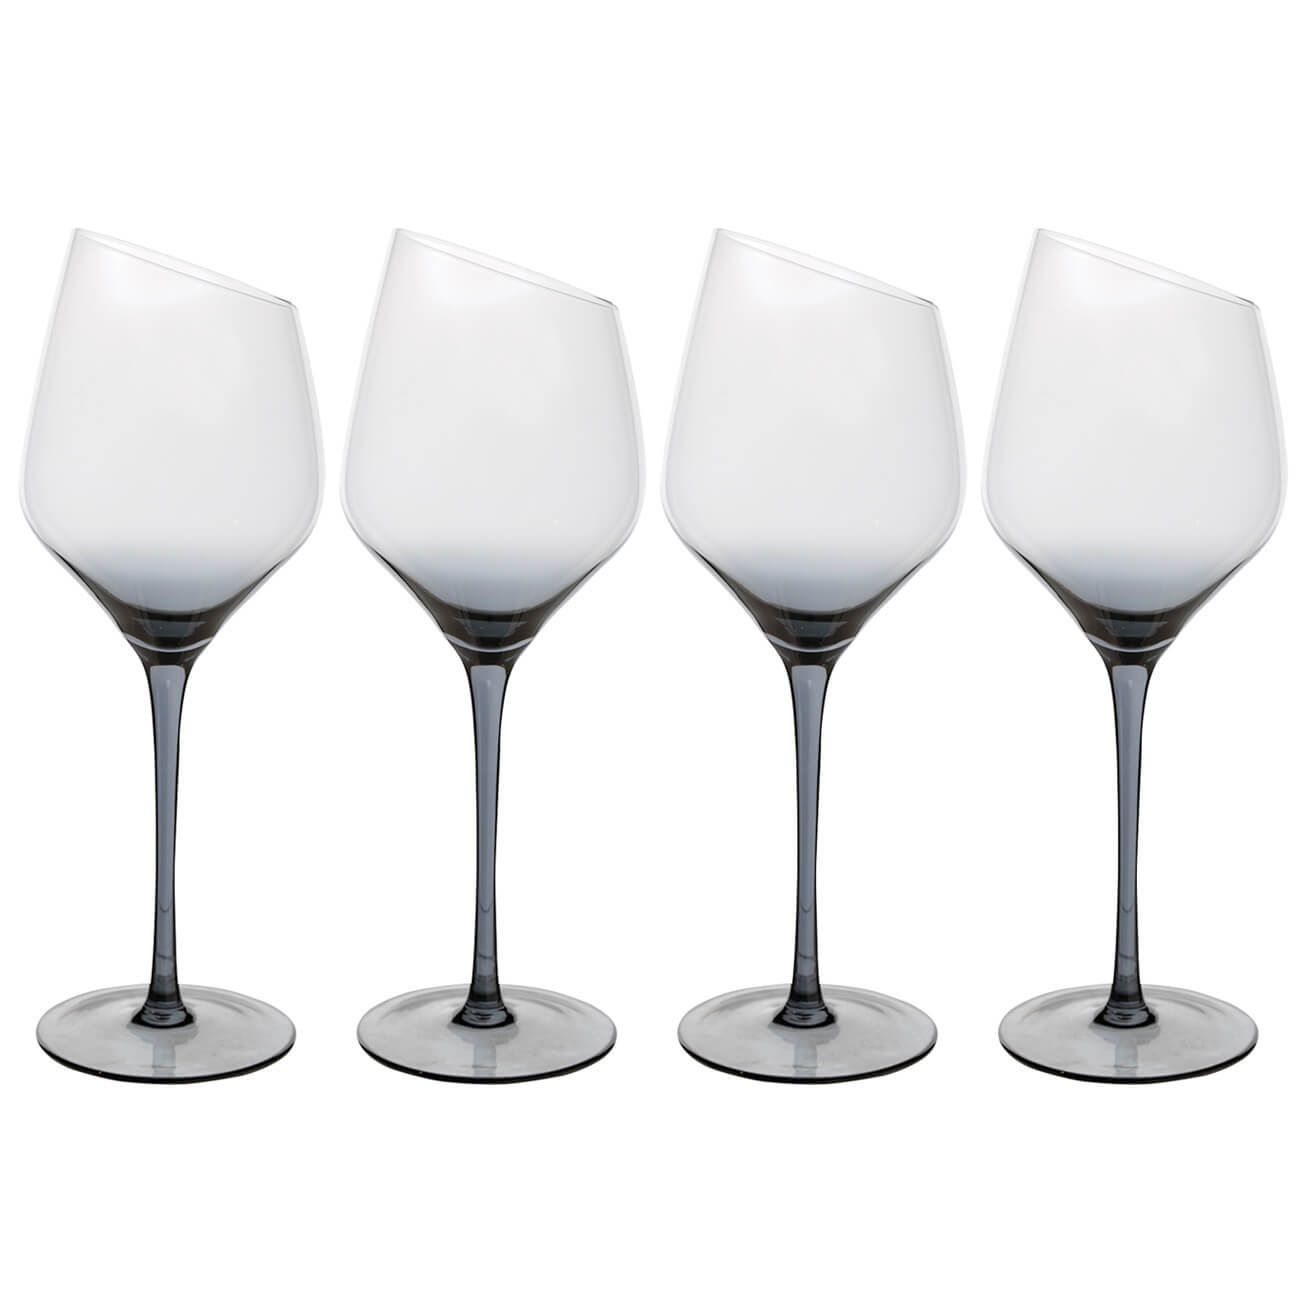 Бокал для белого вина, 460 мл, 4 шт, стекло, серый, Charm L Color бокал для белого вина 460 мл 4 шт стекло перламутр charm l polar